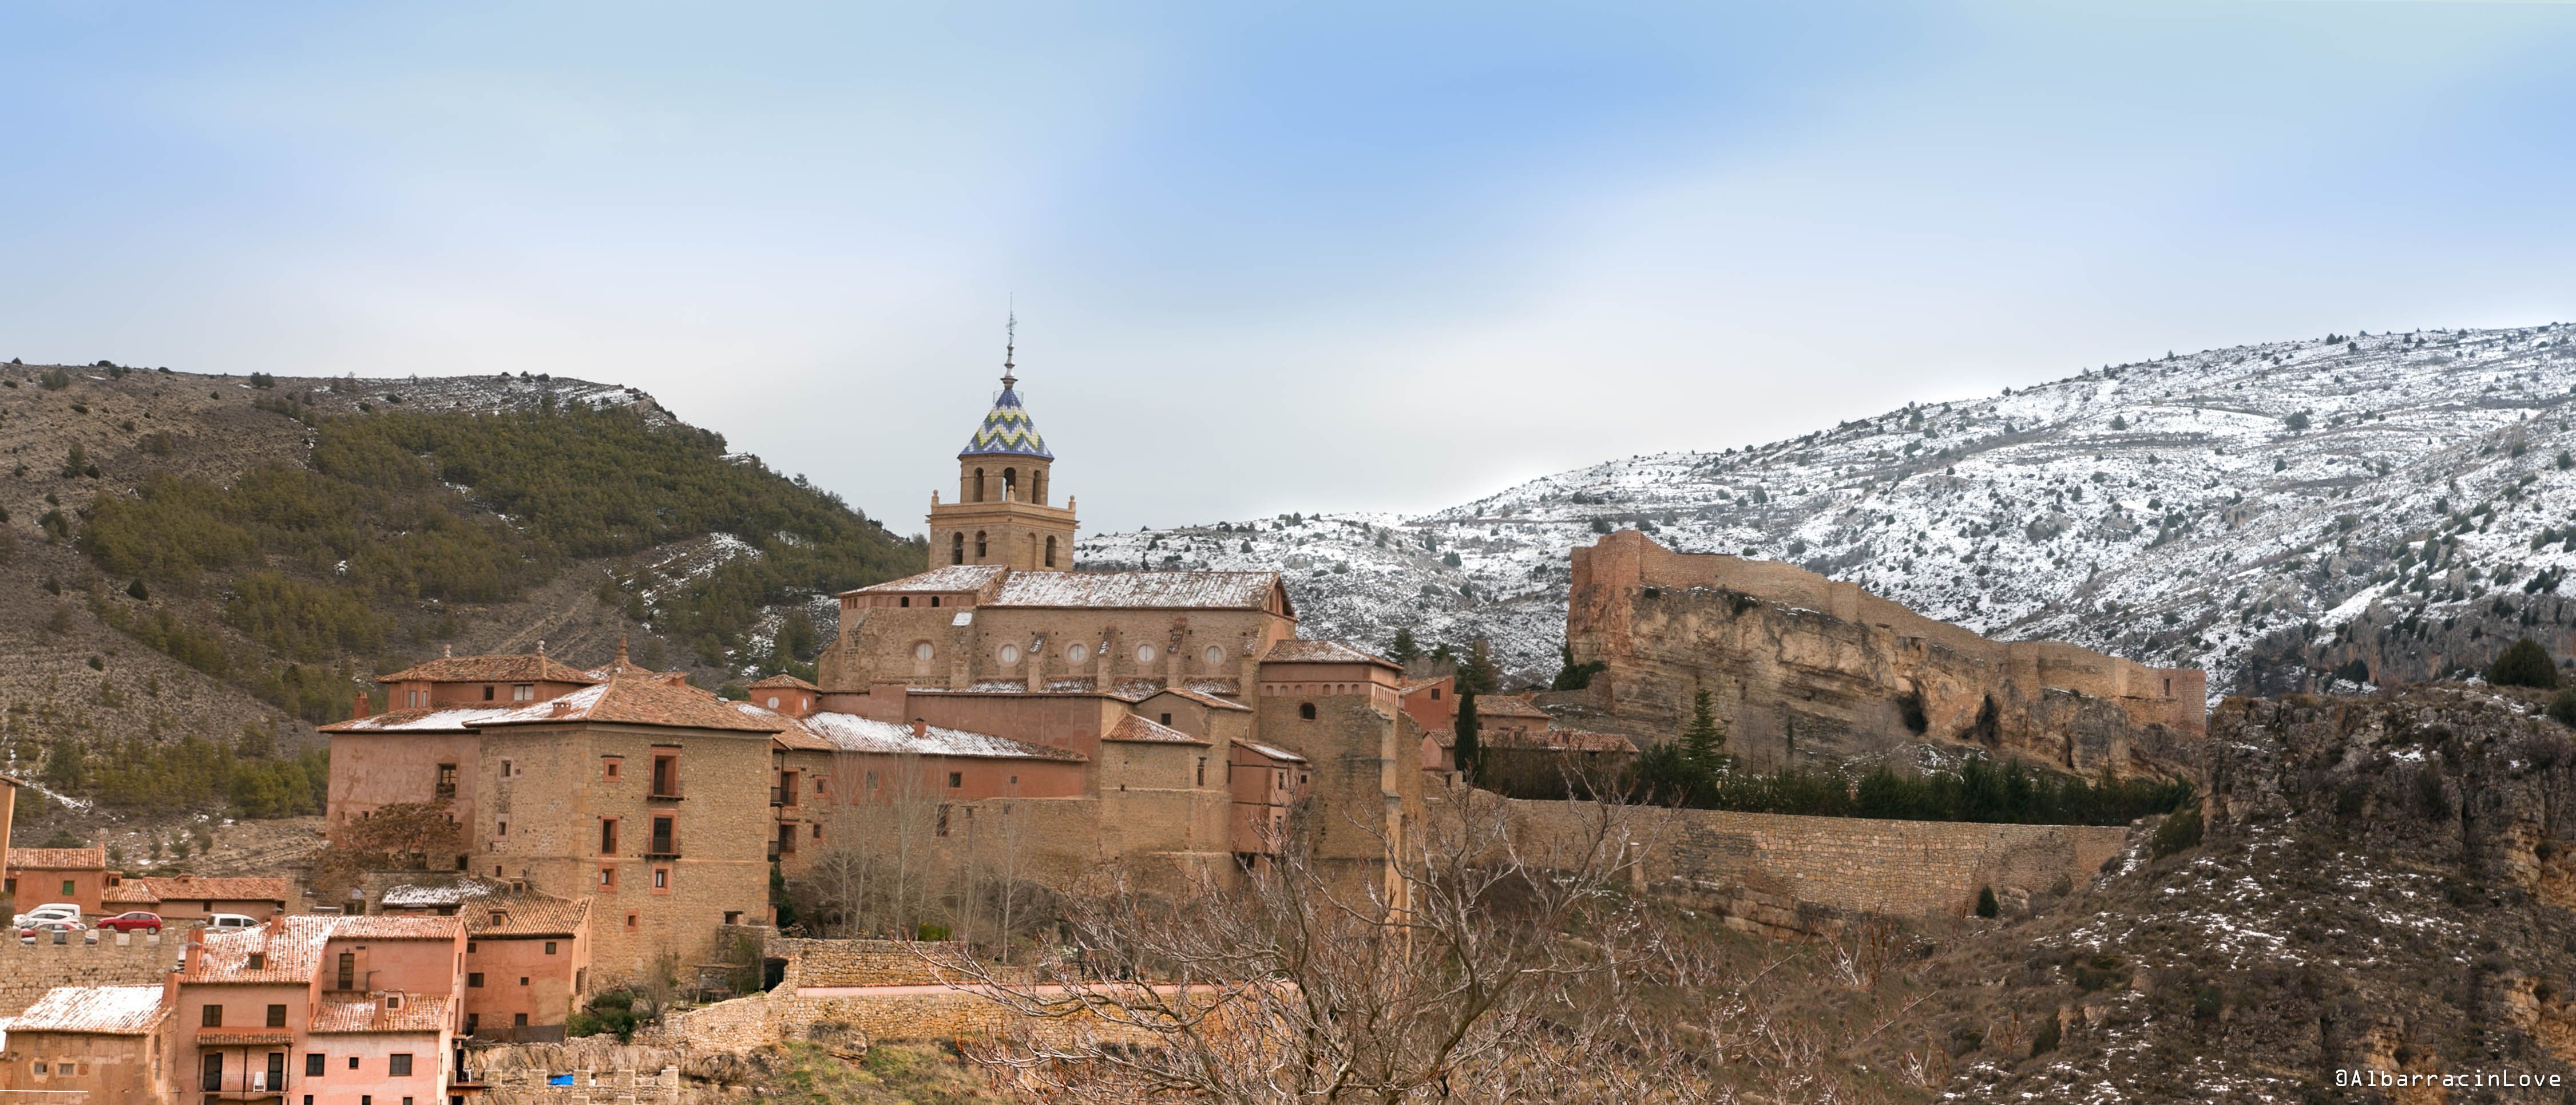 Imagen de las Murallas y el Castillo de Albarracin